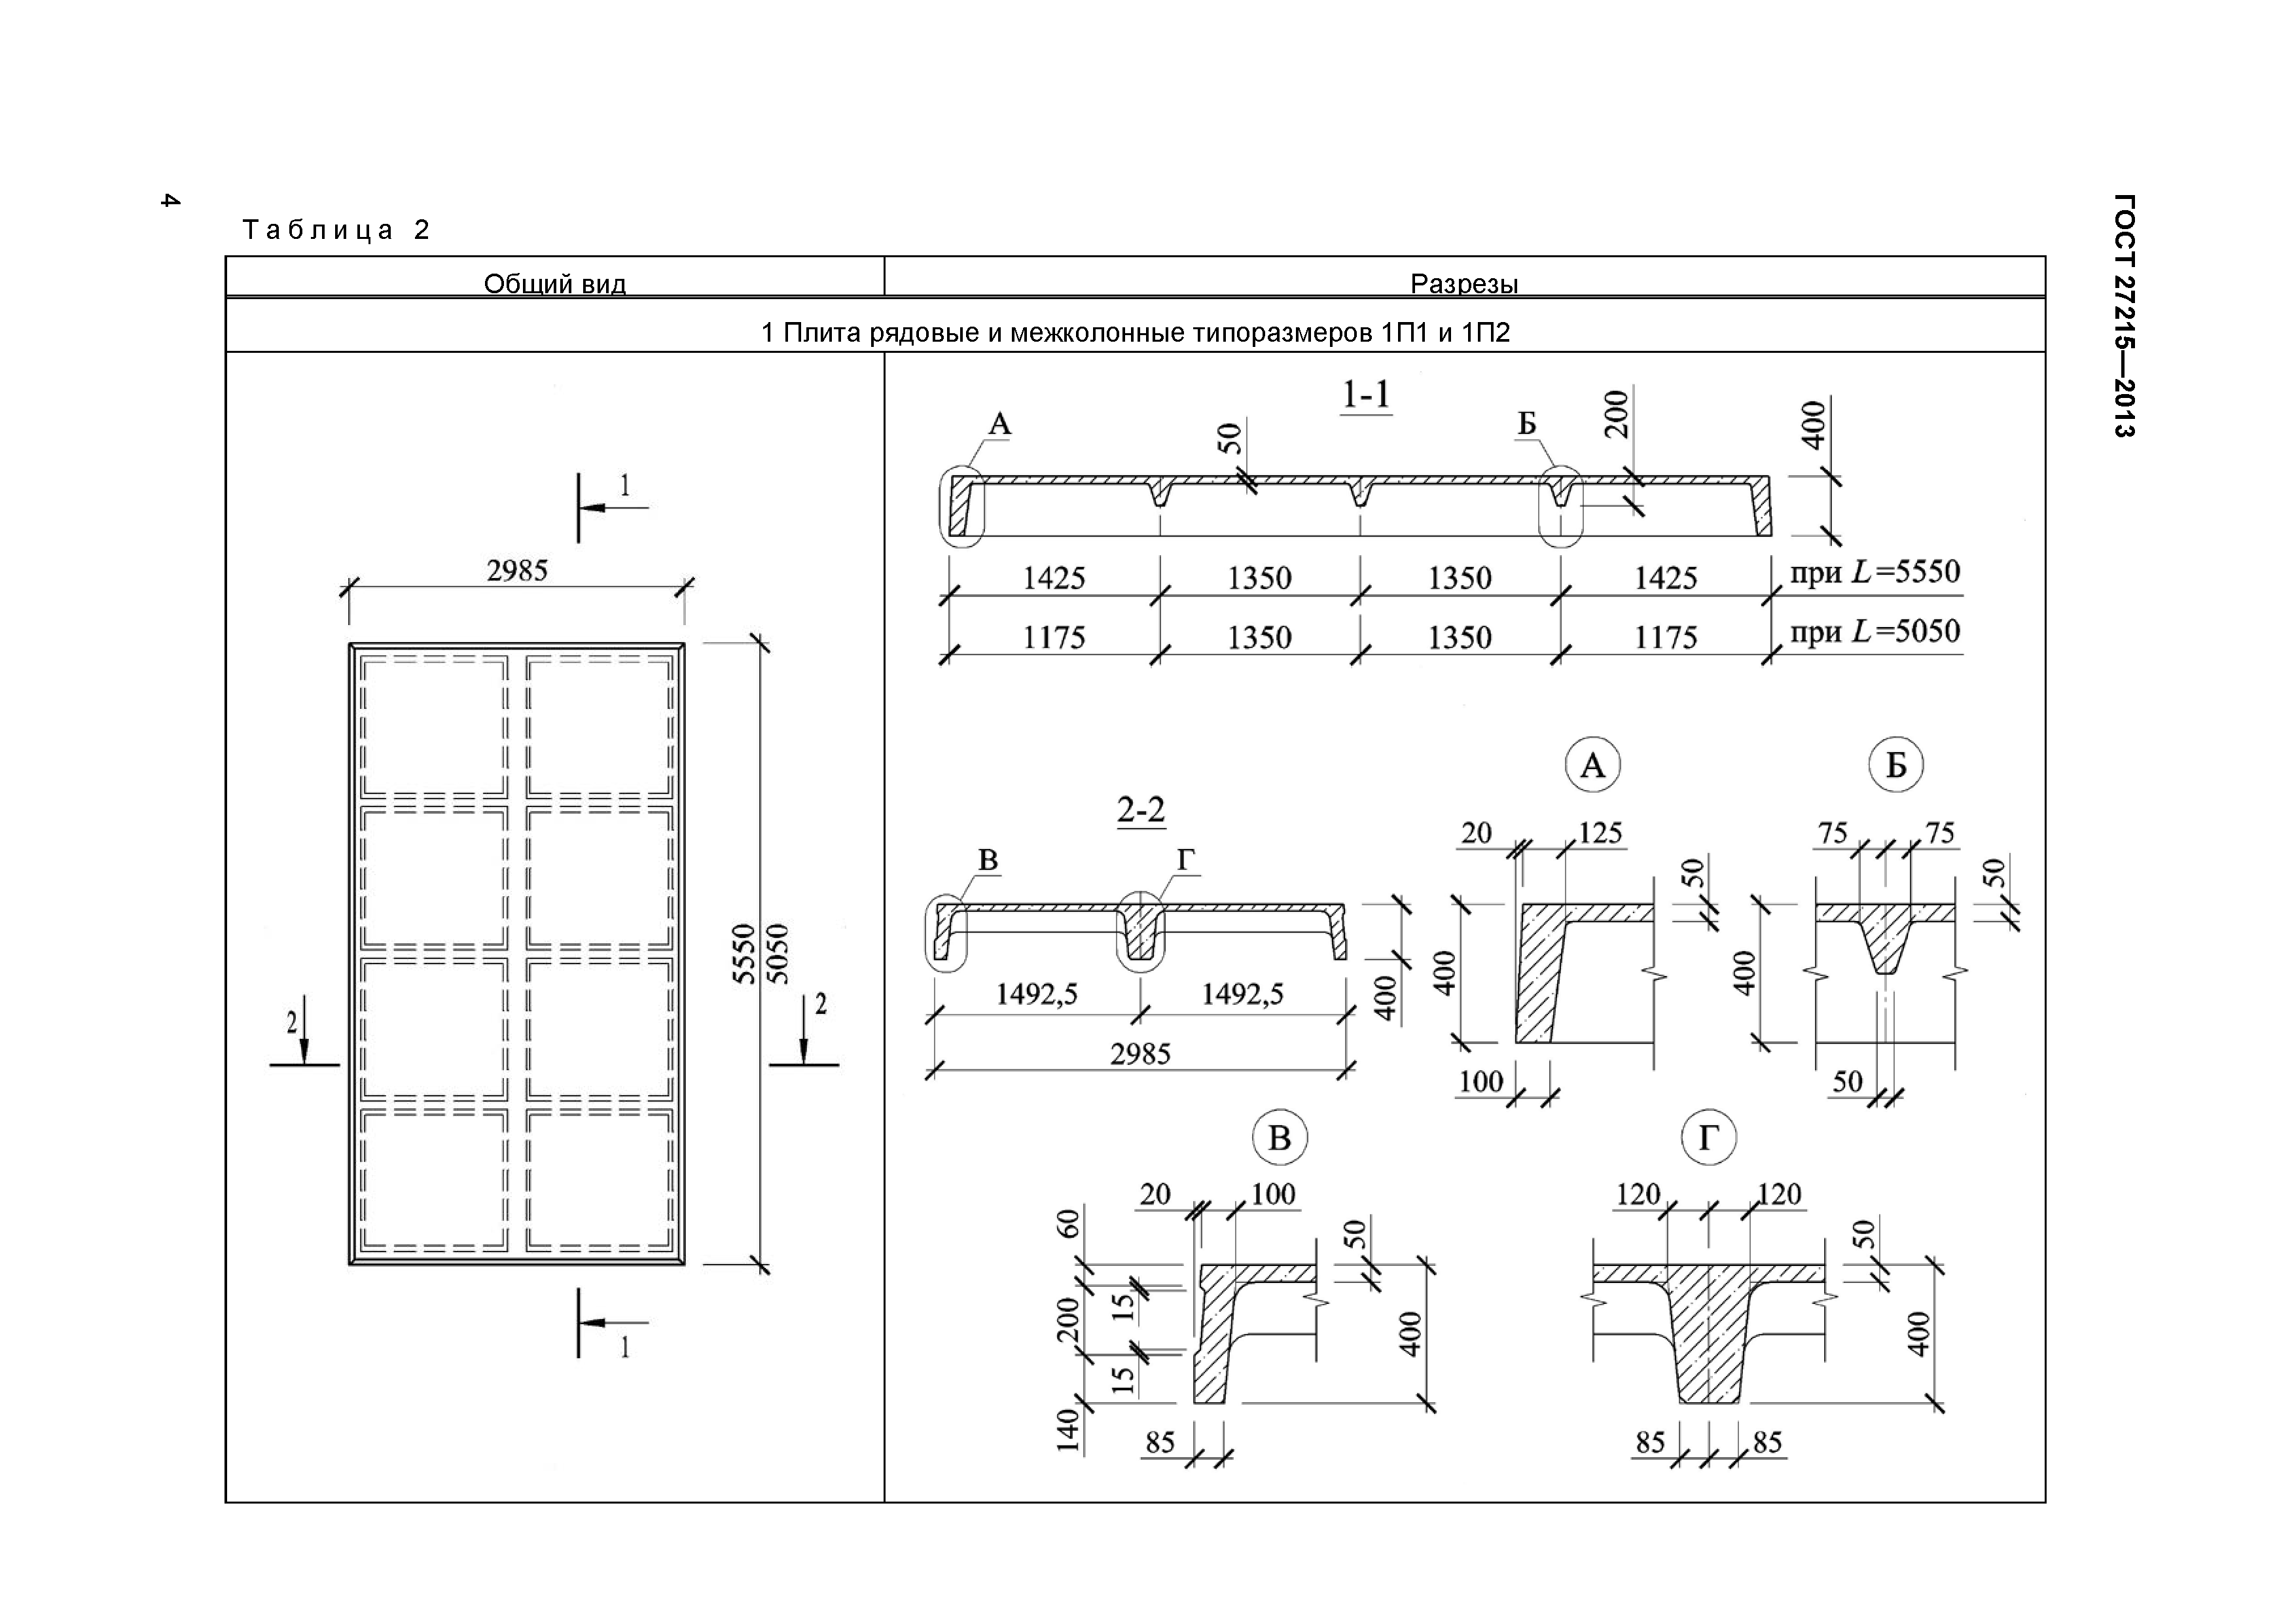 Гост 21506-2013 плиты перекрытий железобетонные ребристые высотой 300 мм для зданий и сооружений. технические условия